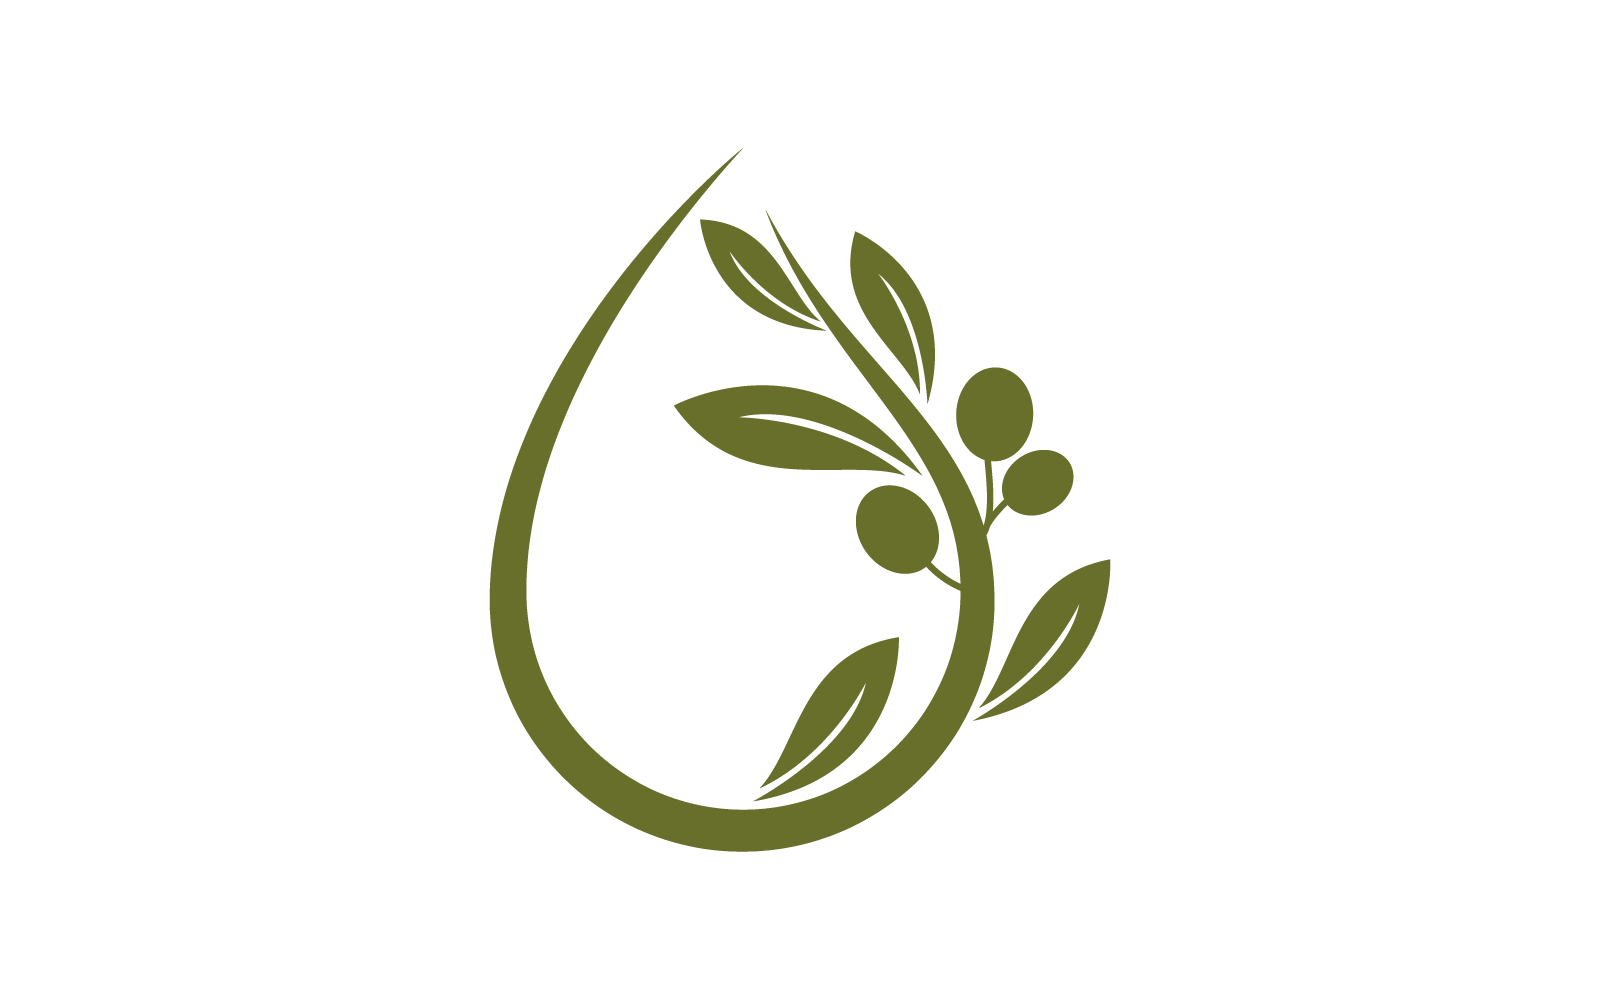 Olive design illustration vector template